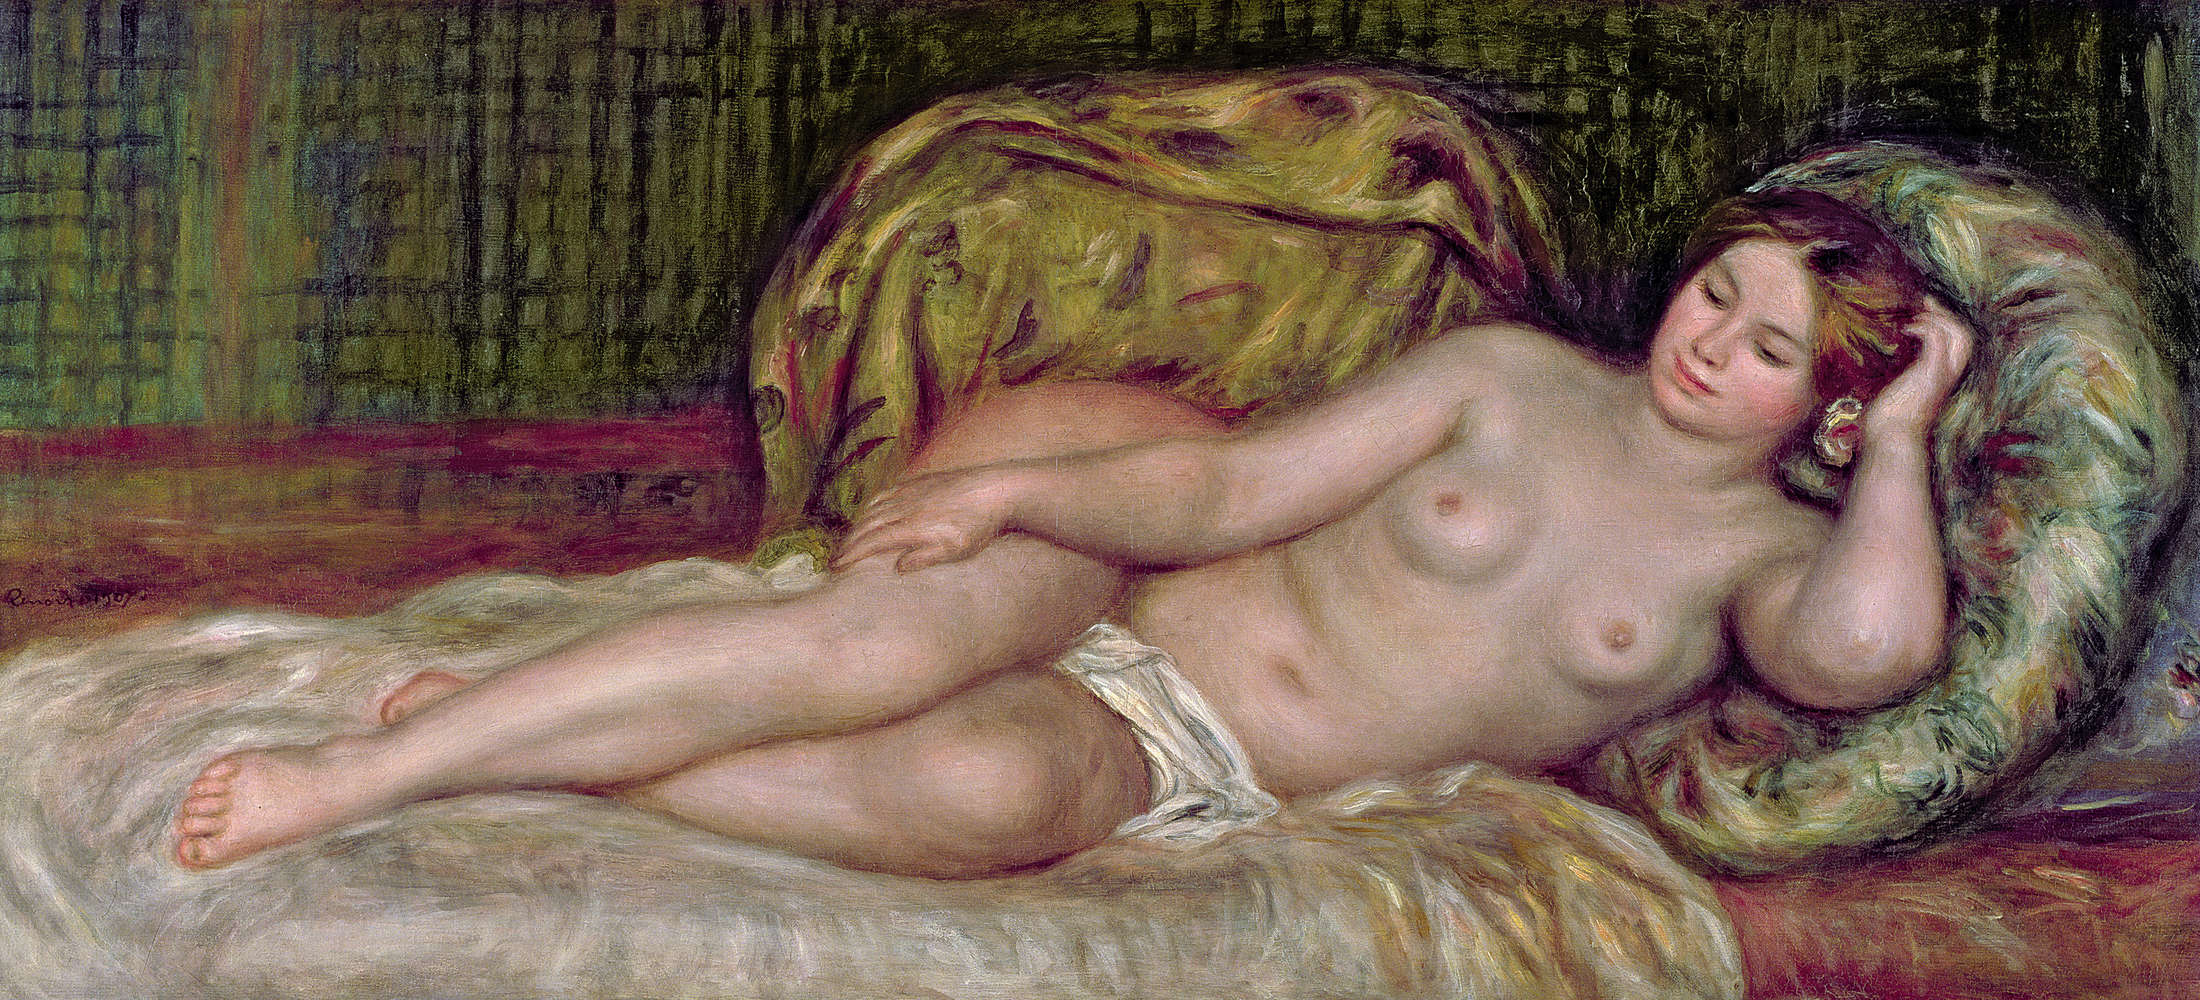             Naakt" muurschildering van Pierre Auguste Renoir
        